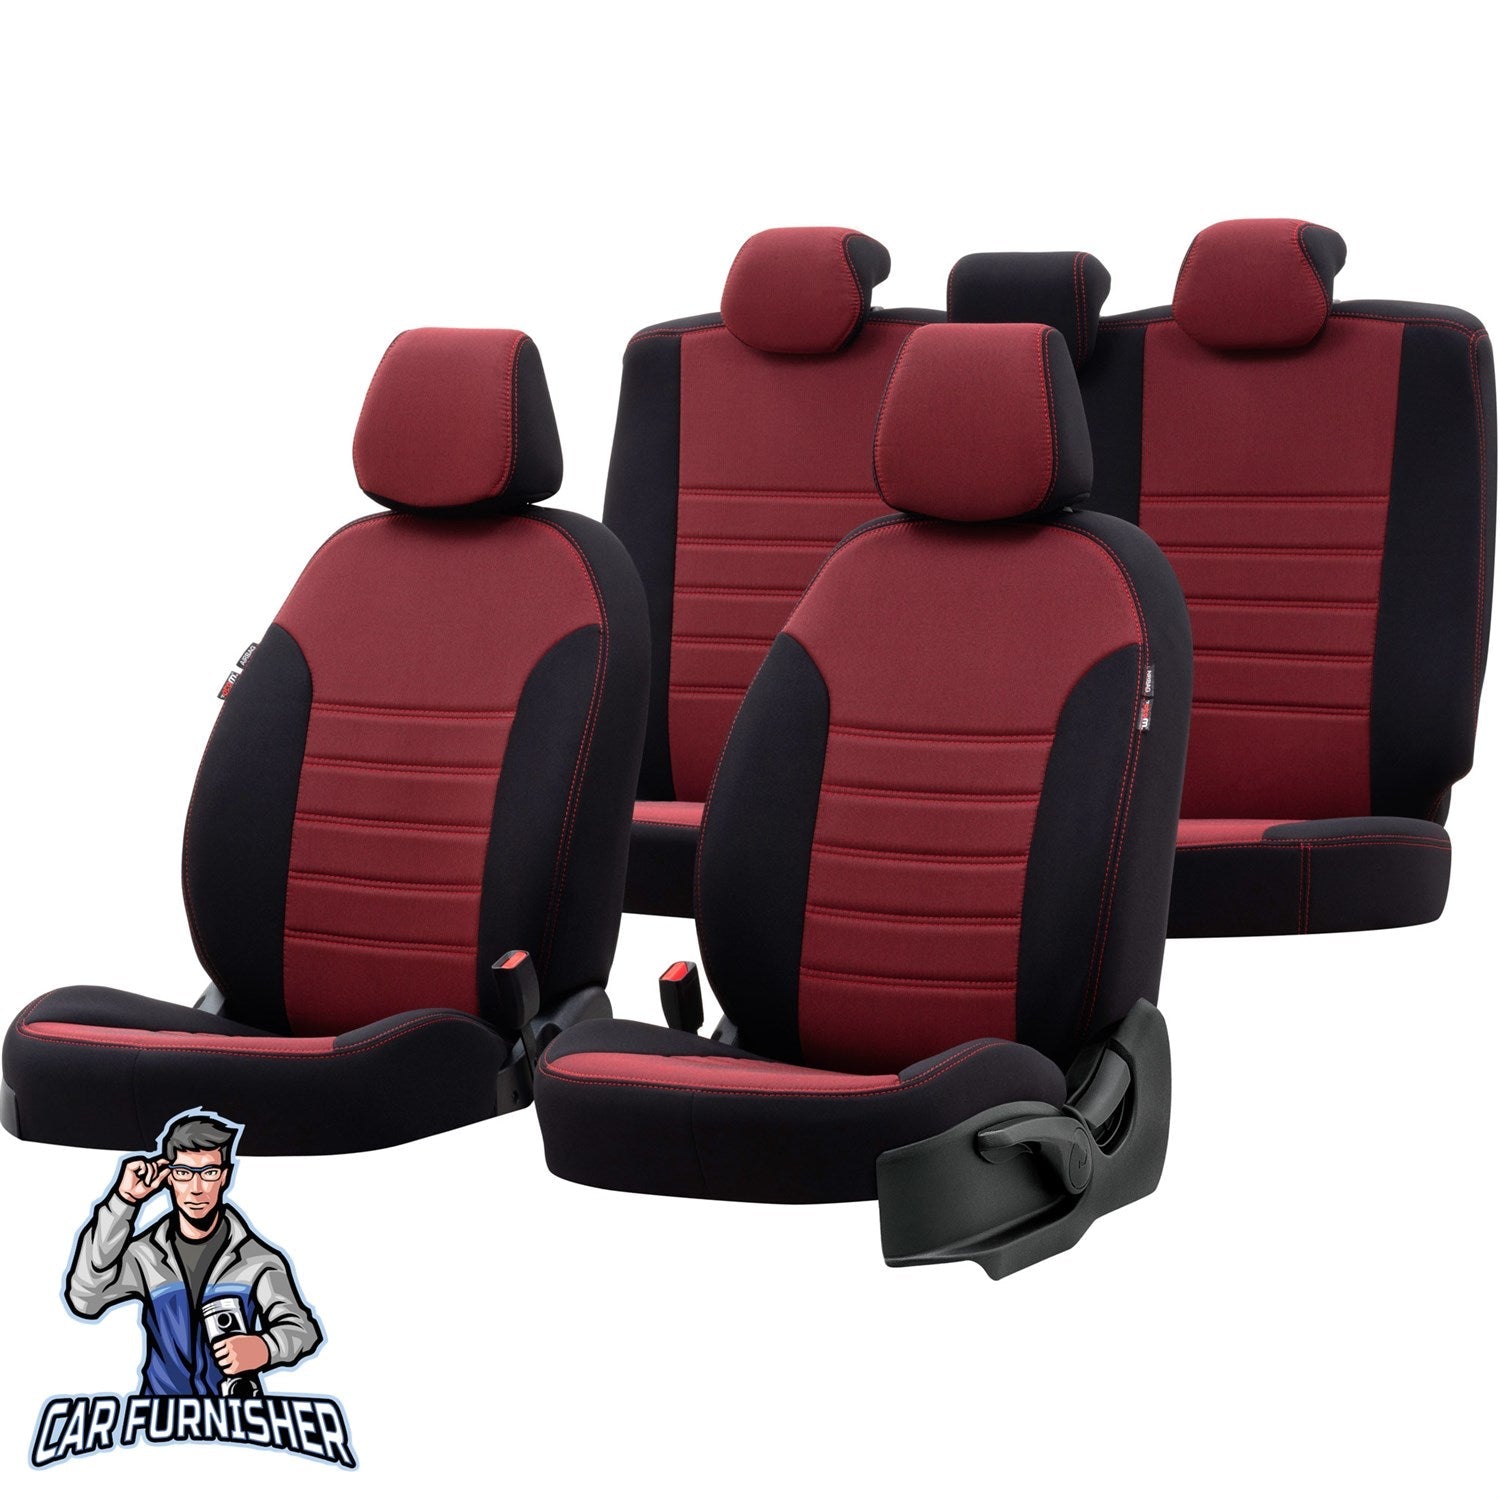 Toyota Aygo Seat Cover Original Jacquard Design Red Jacquard Fabric